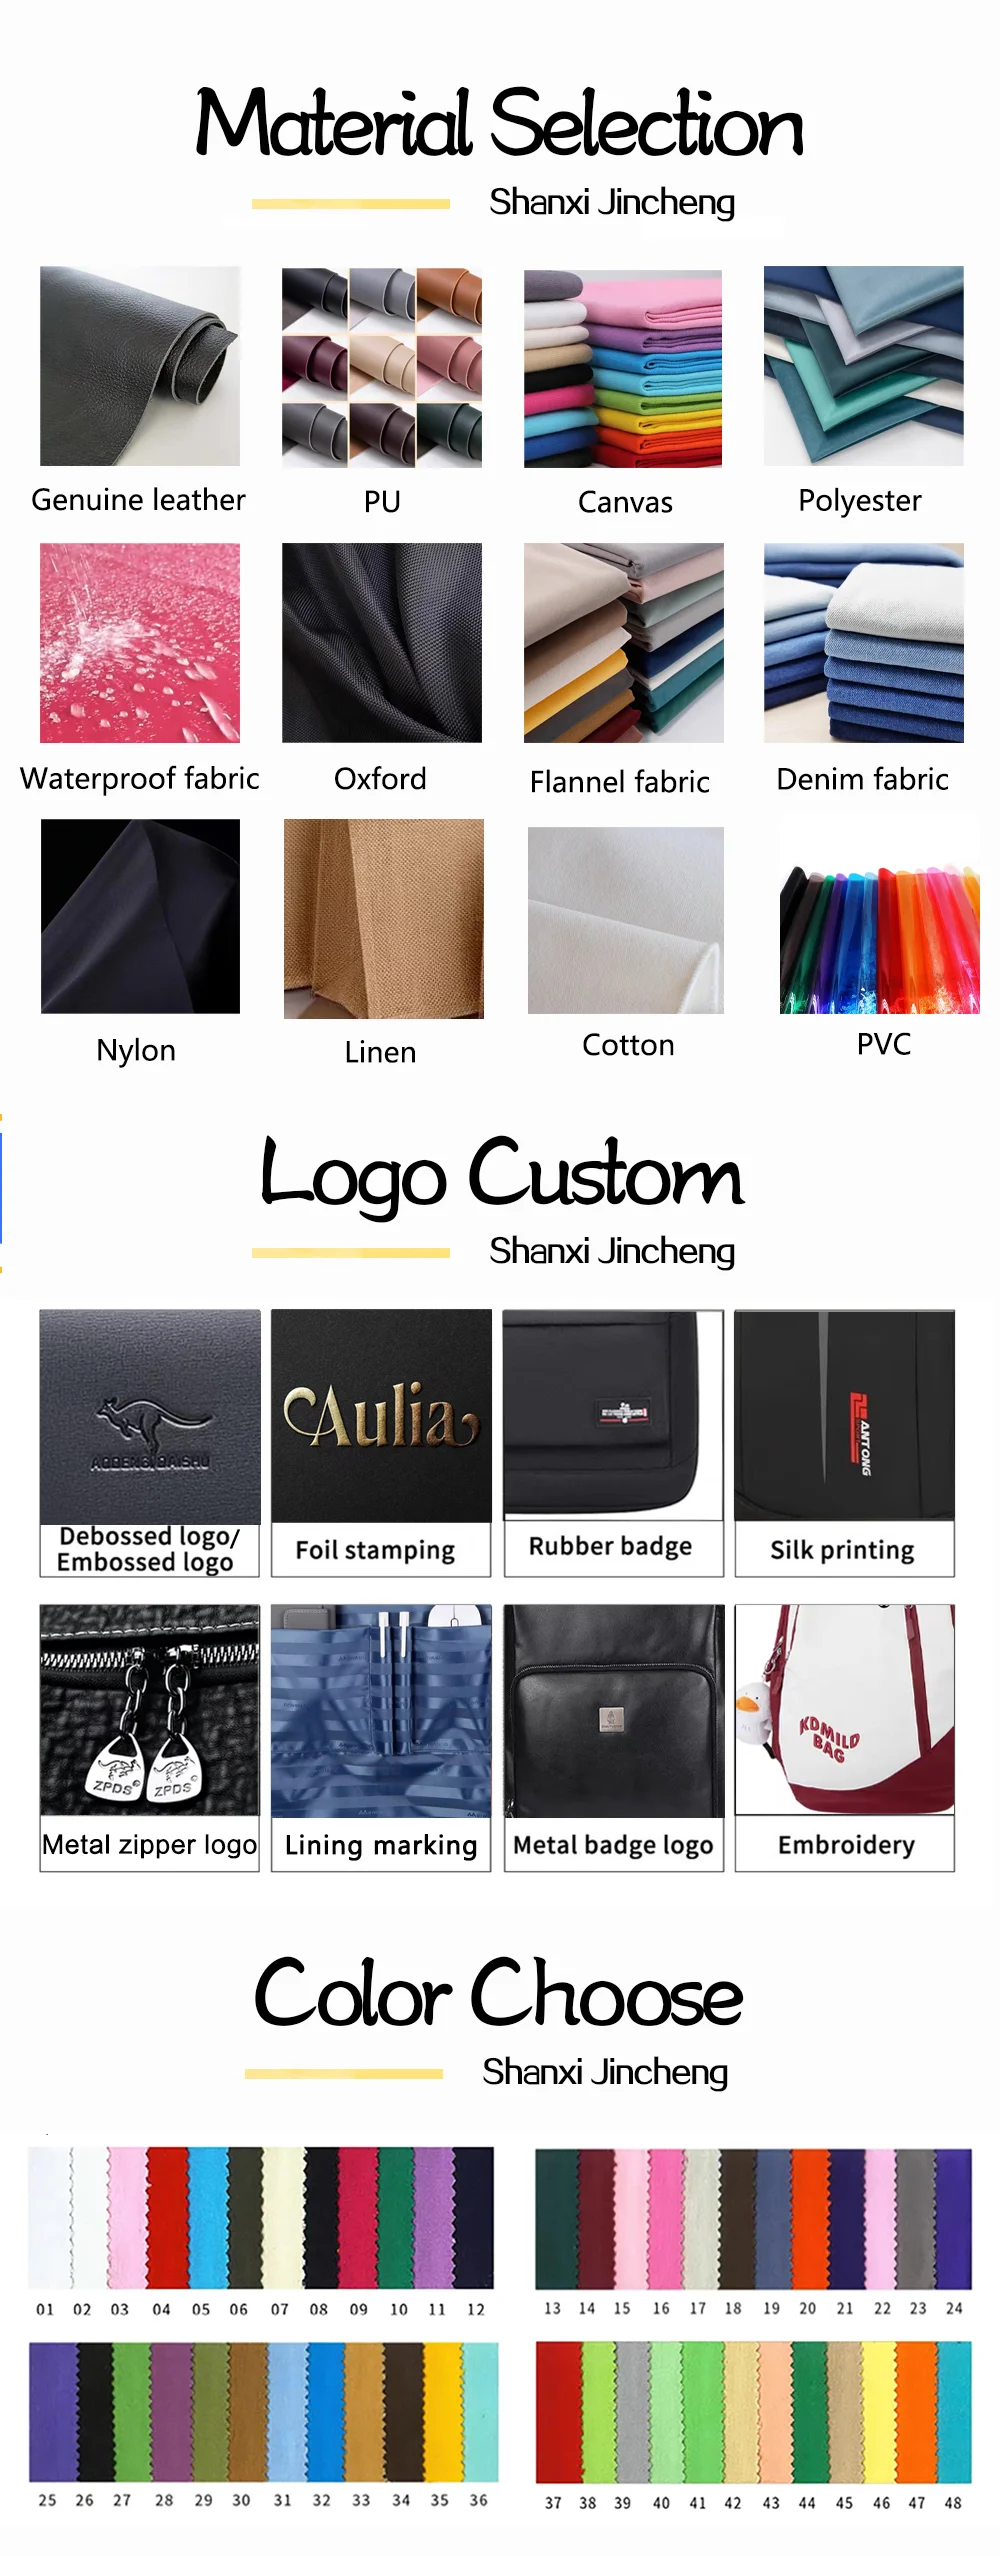 Designers Handbag 2023 New Chain Totes Bag One Shoulder Messenger Bag ...